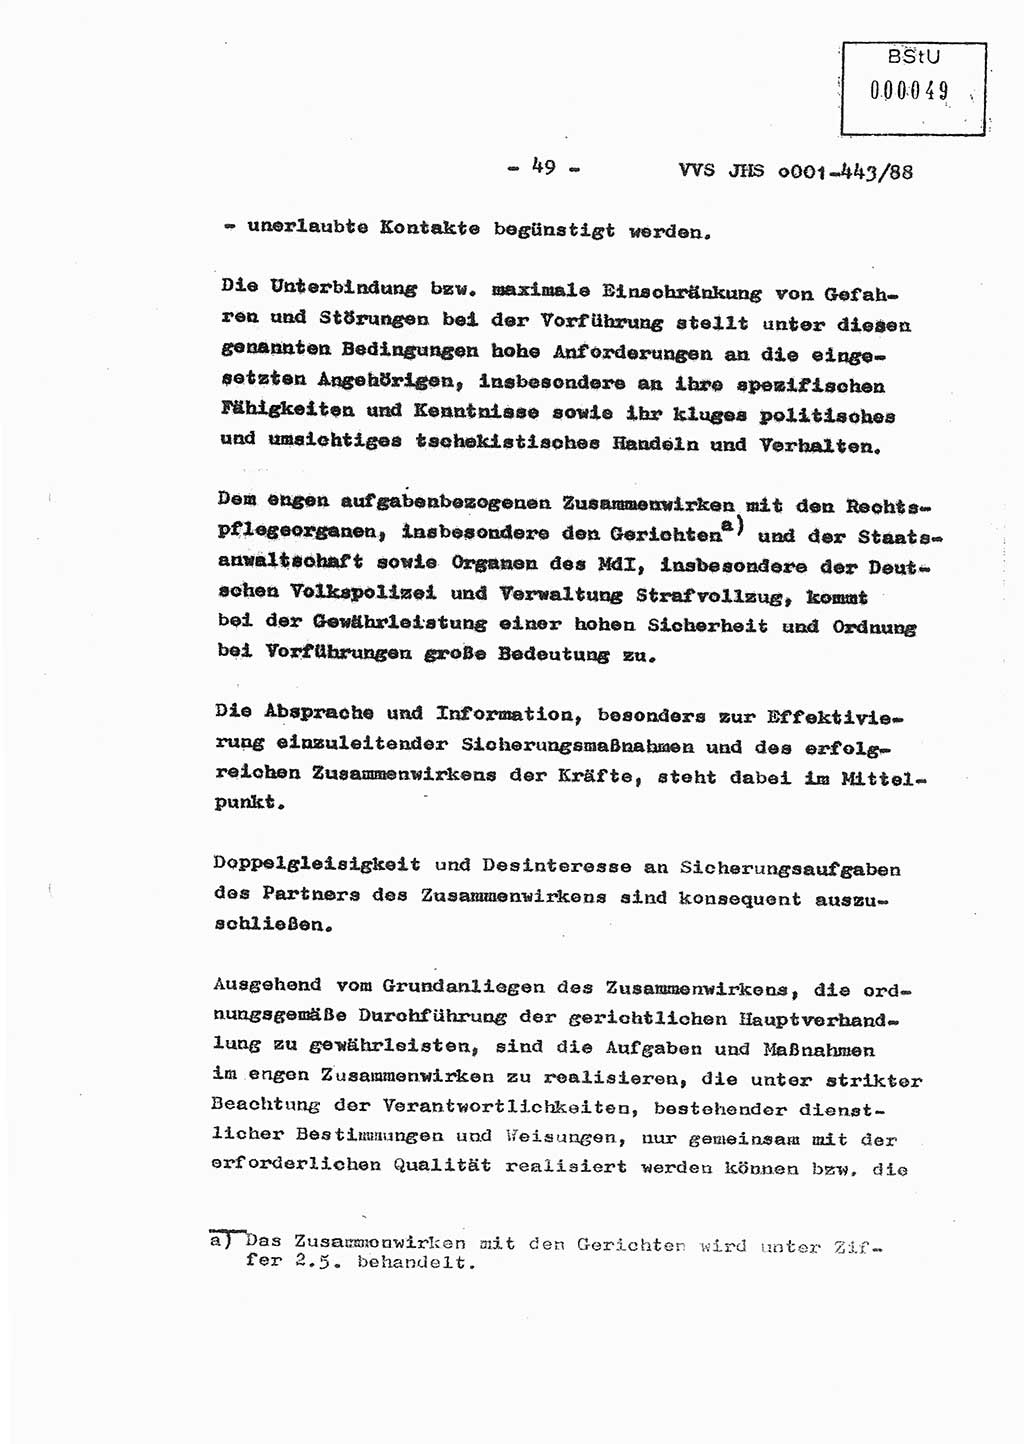 Diplomarbeit Hauptmann Michael Rast (Abt. ⅩⅣ), Major Bernd Rahaus (Abt. ⅩⅣ), Ministerium für Staatssicherheit (MfS) [Deutsche Demokratische Republik (DDR)], Juristische Hochschule (JHS), Vertrauliche Verschlußsache (VVS) o001-443/88, Potsdam 1988, Seite 49 (Dipl.-Arb. MfS DDR JHS VVS o001-443/88 1988, S. 49)